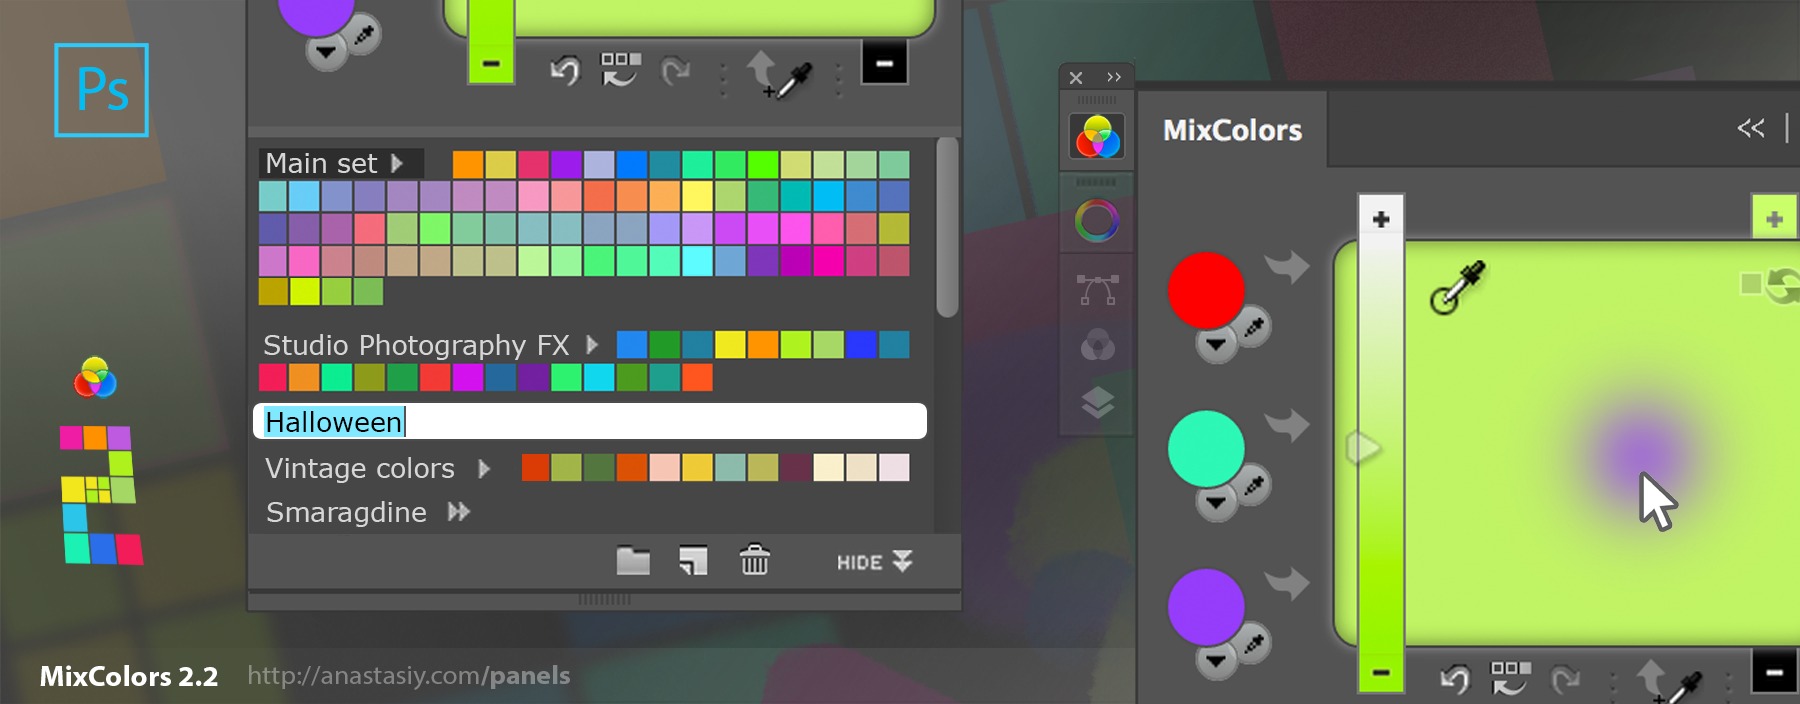 MixColors color mixer 2.2